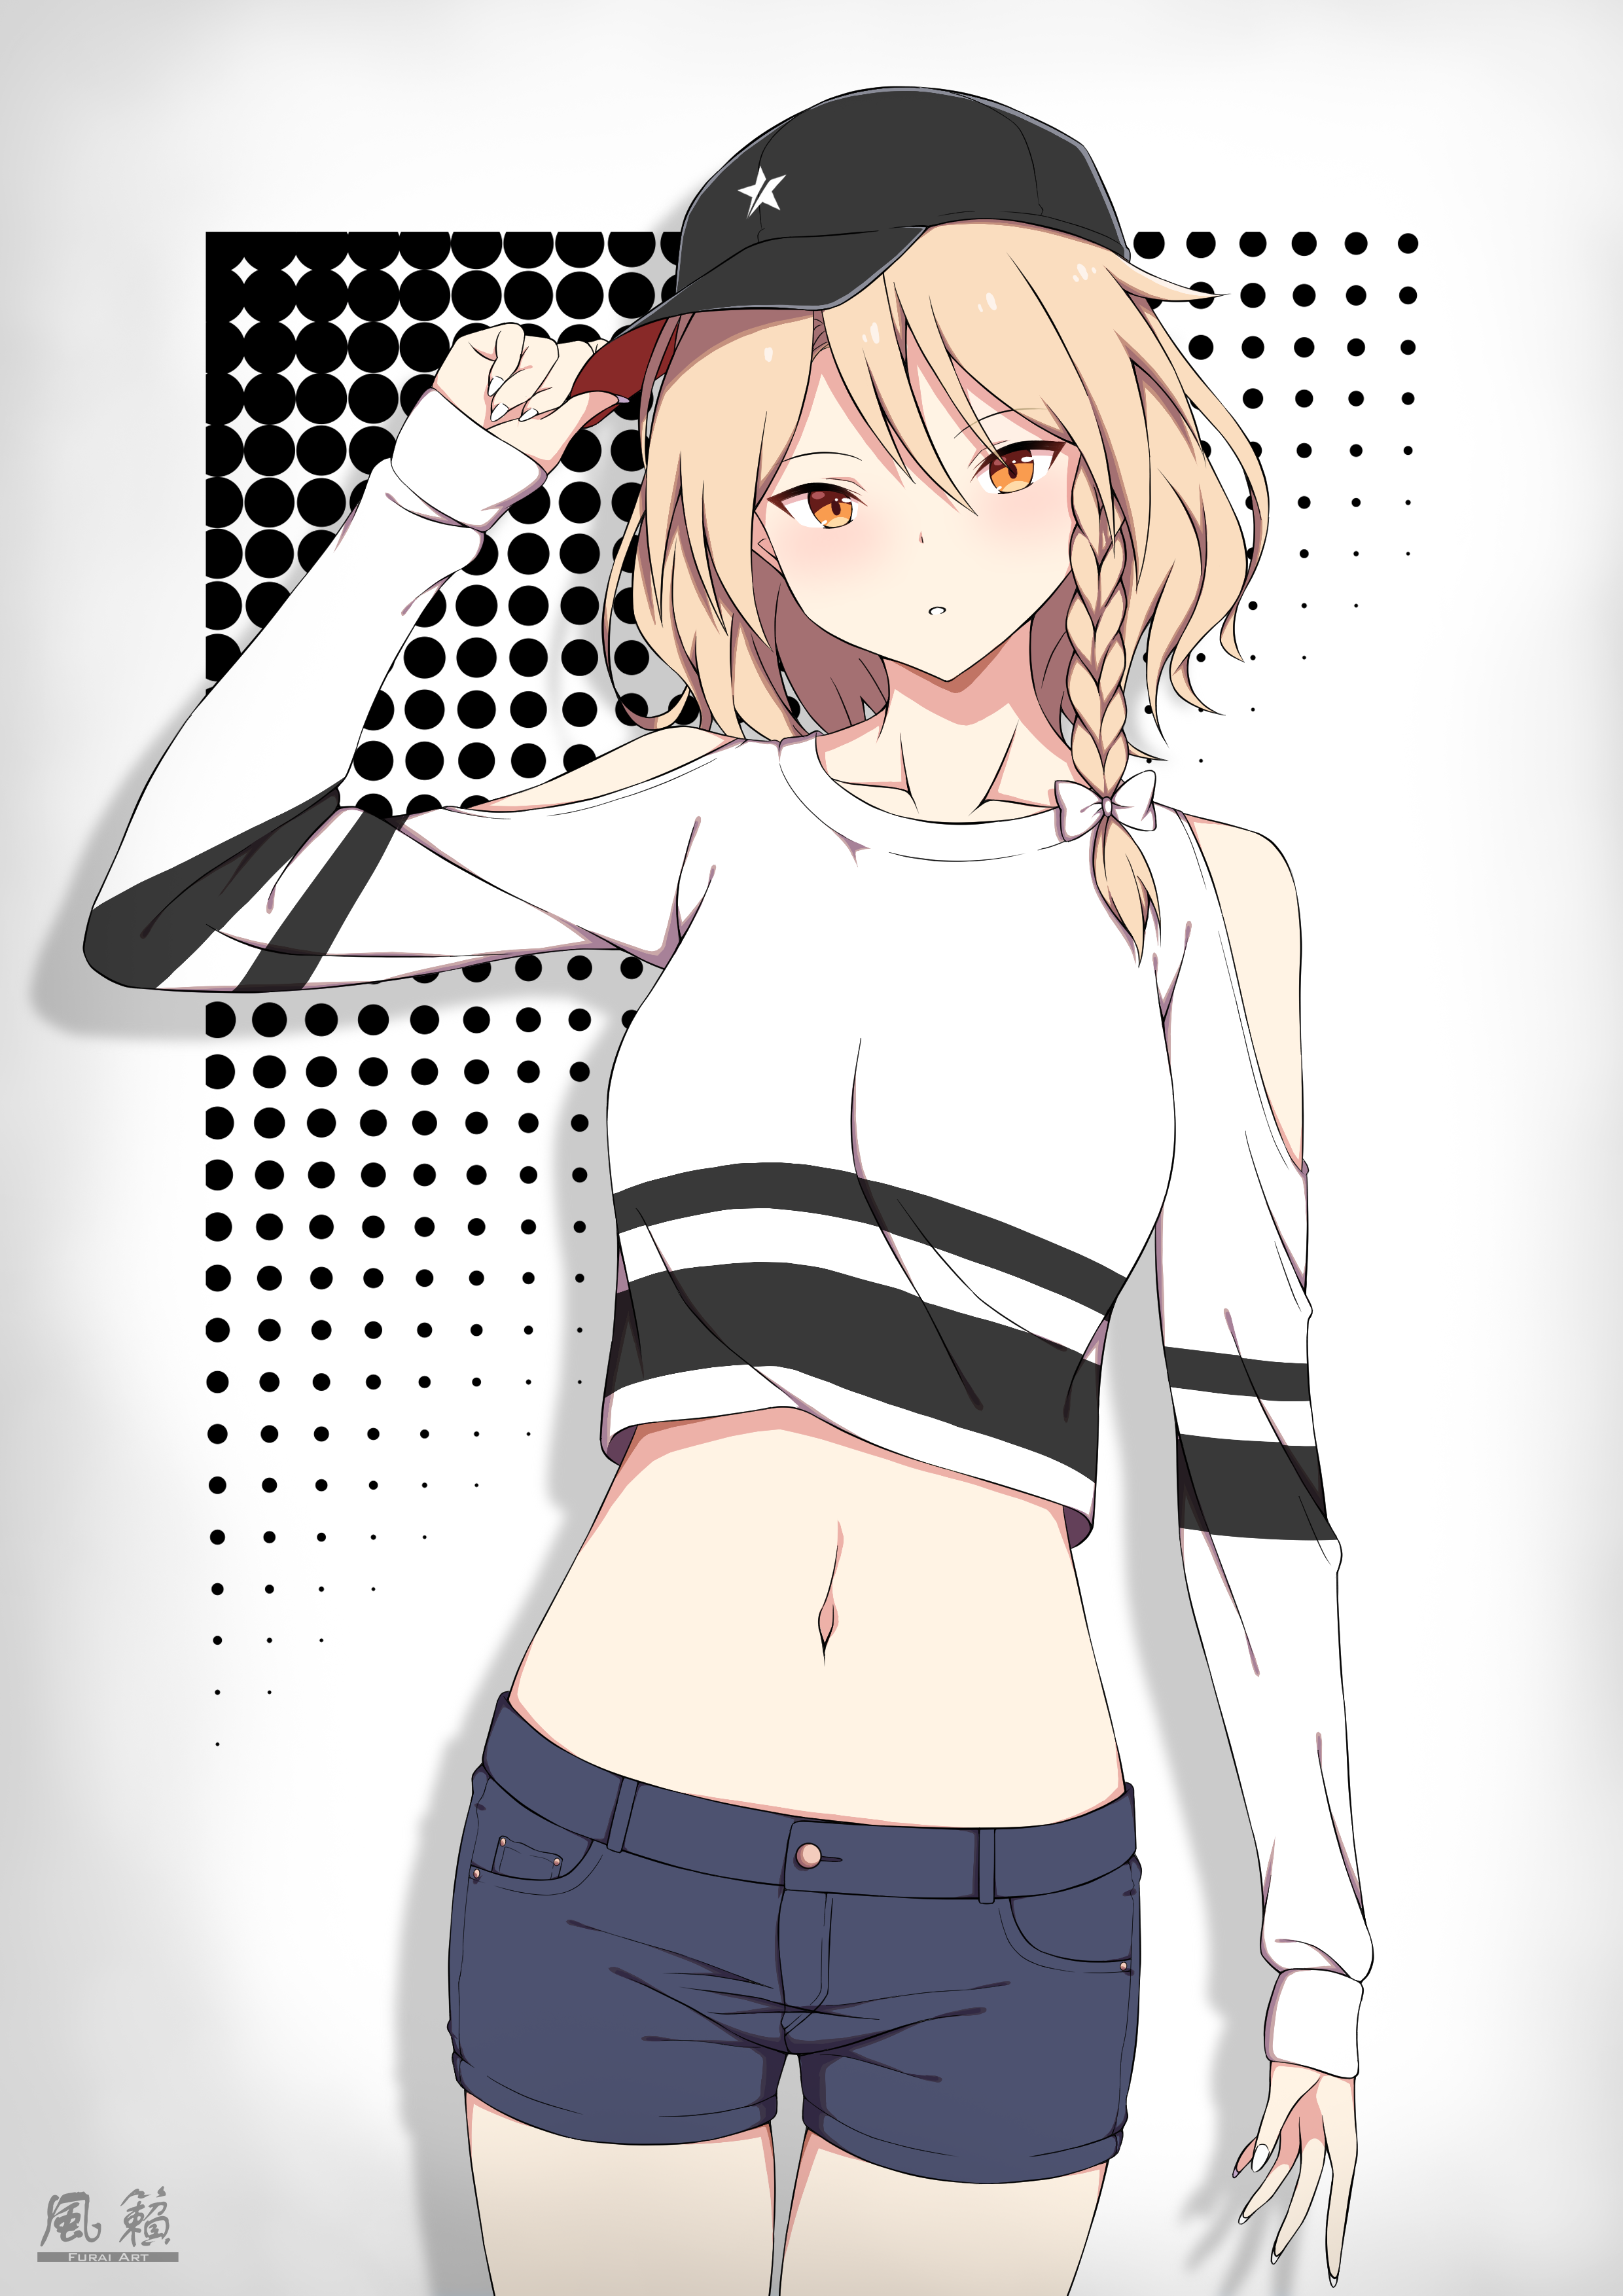 Hat Crop Top Shorts Digital 2D Digital Art Anime Anime Girls Blonde Braided  Hair Short Hair Furai Wallpaper - Resolution:2480x3508 - ID:1272249 -  